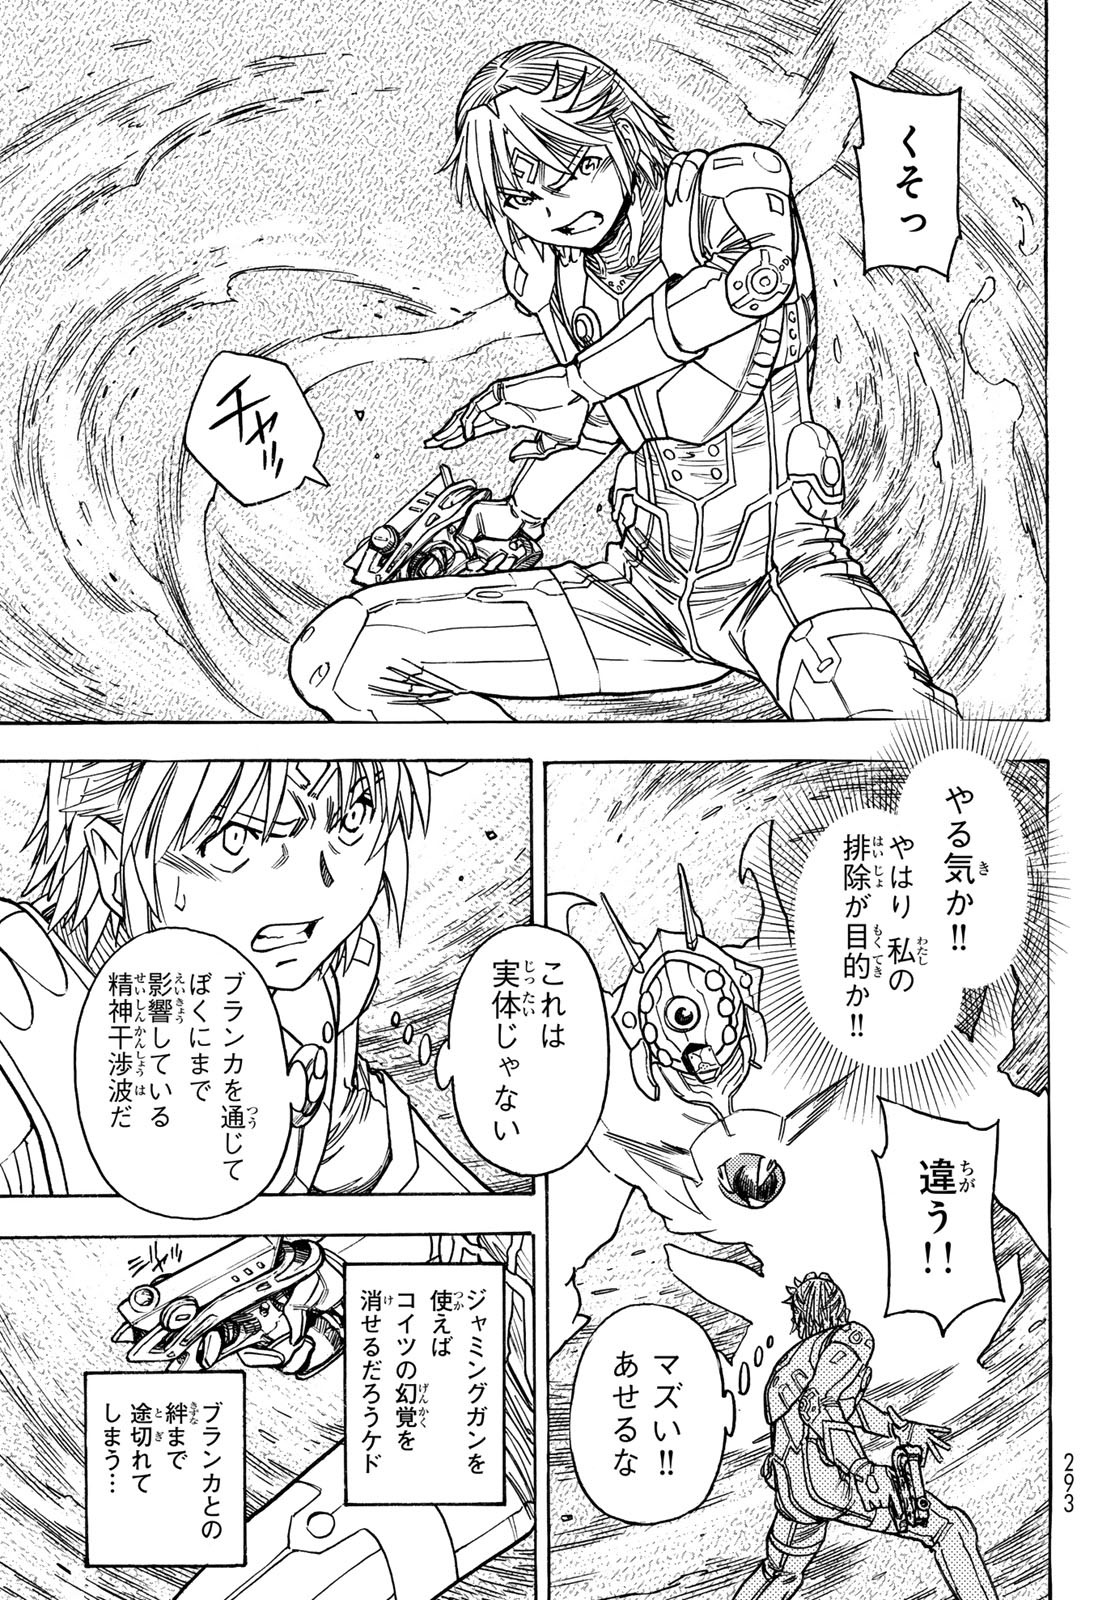 Mugou no Schnell Gear: Chikyuugai Kisouka AI - Chapter 51 - Page 9